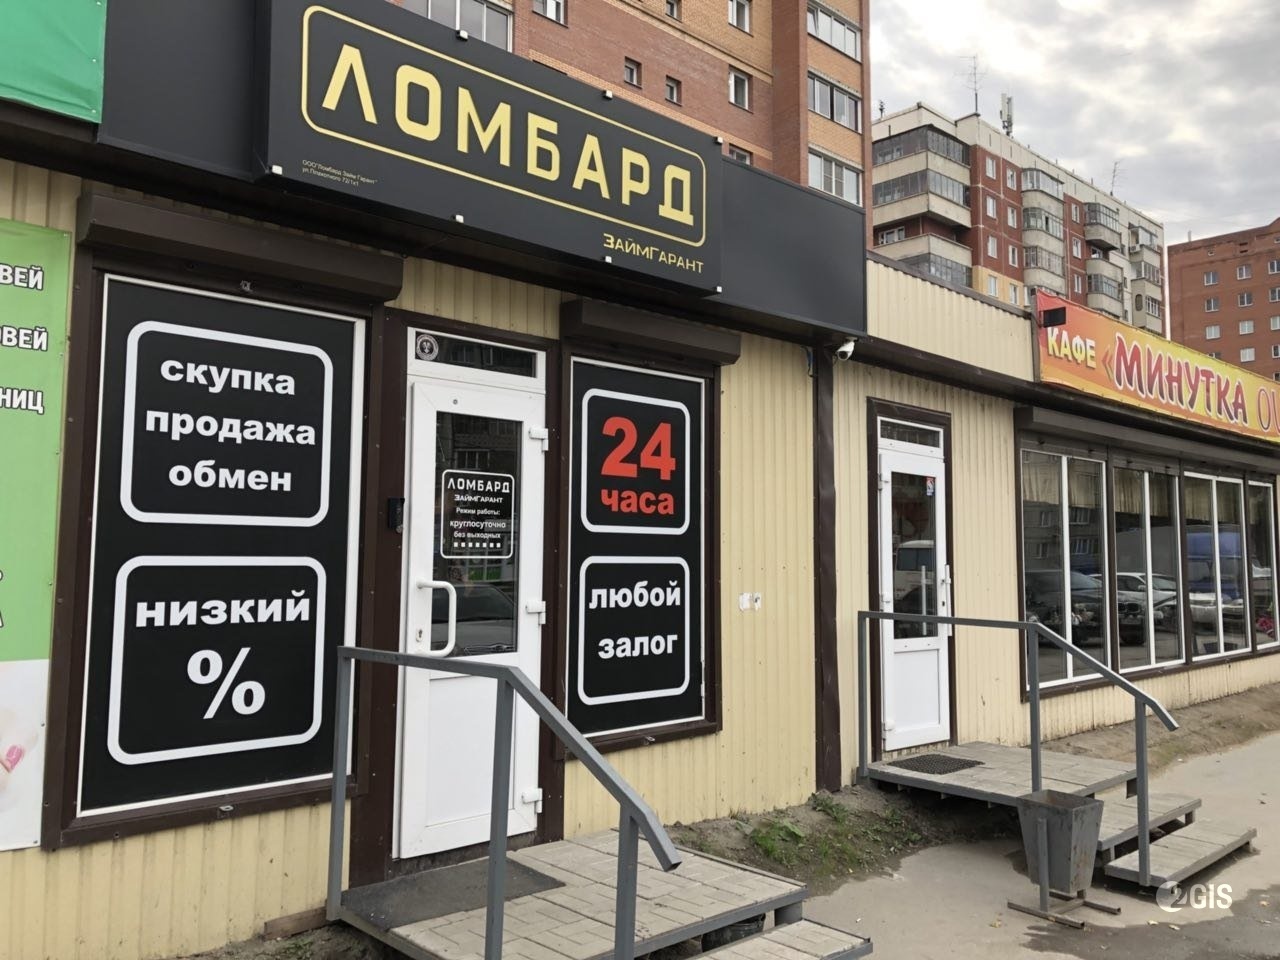 Займы 24 часа в Новосибирске на кредитную карту